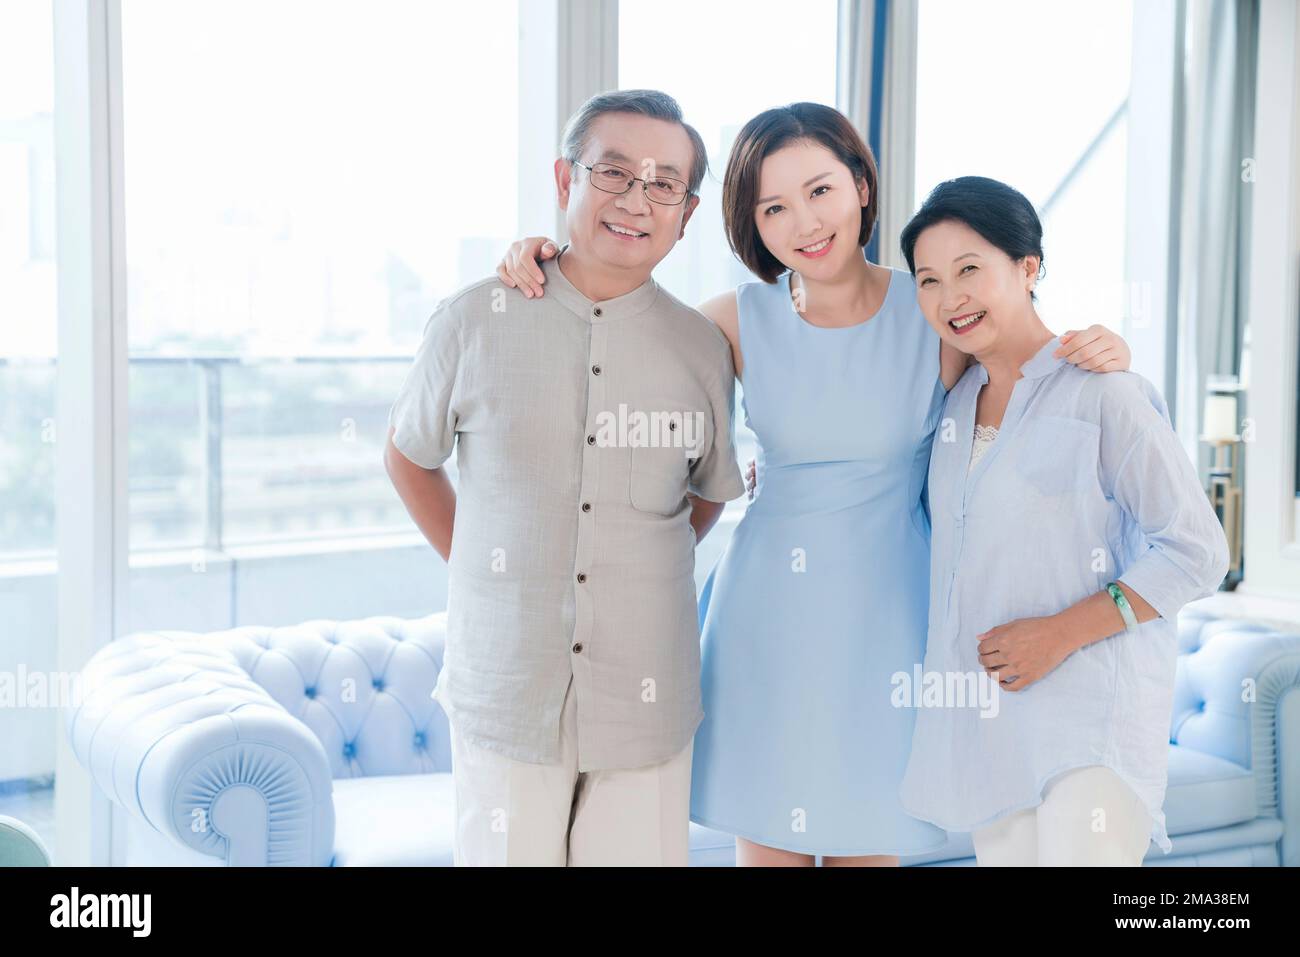 The happy family Stock Photo